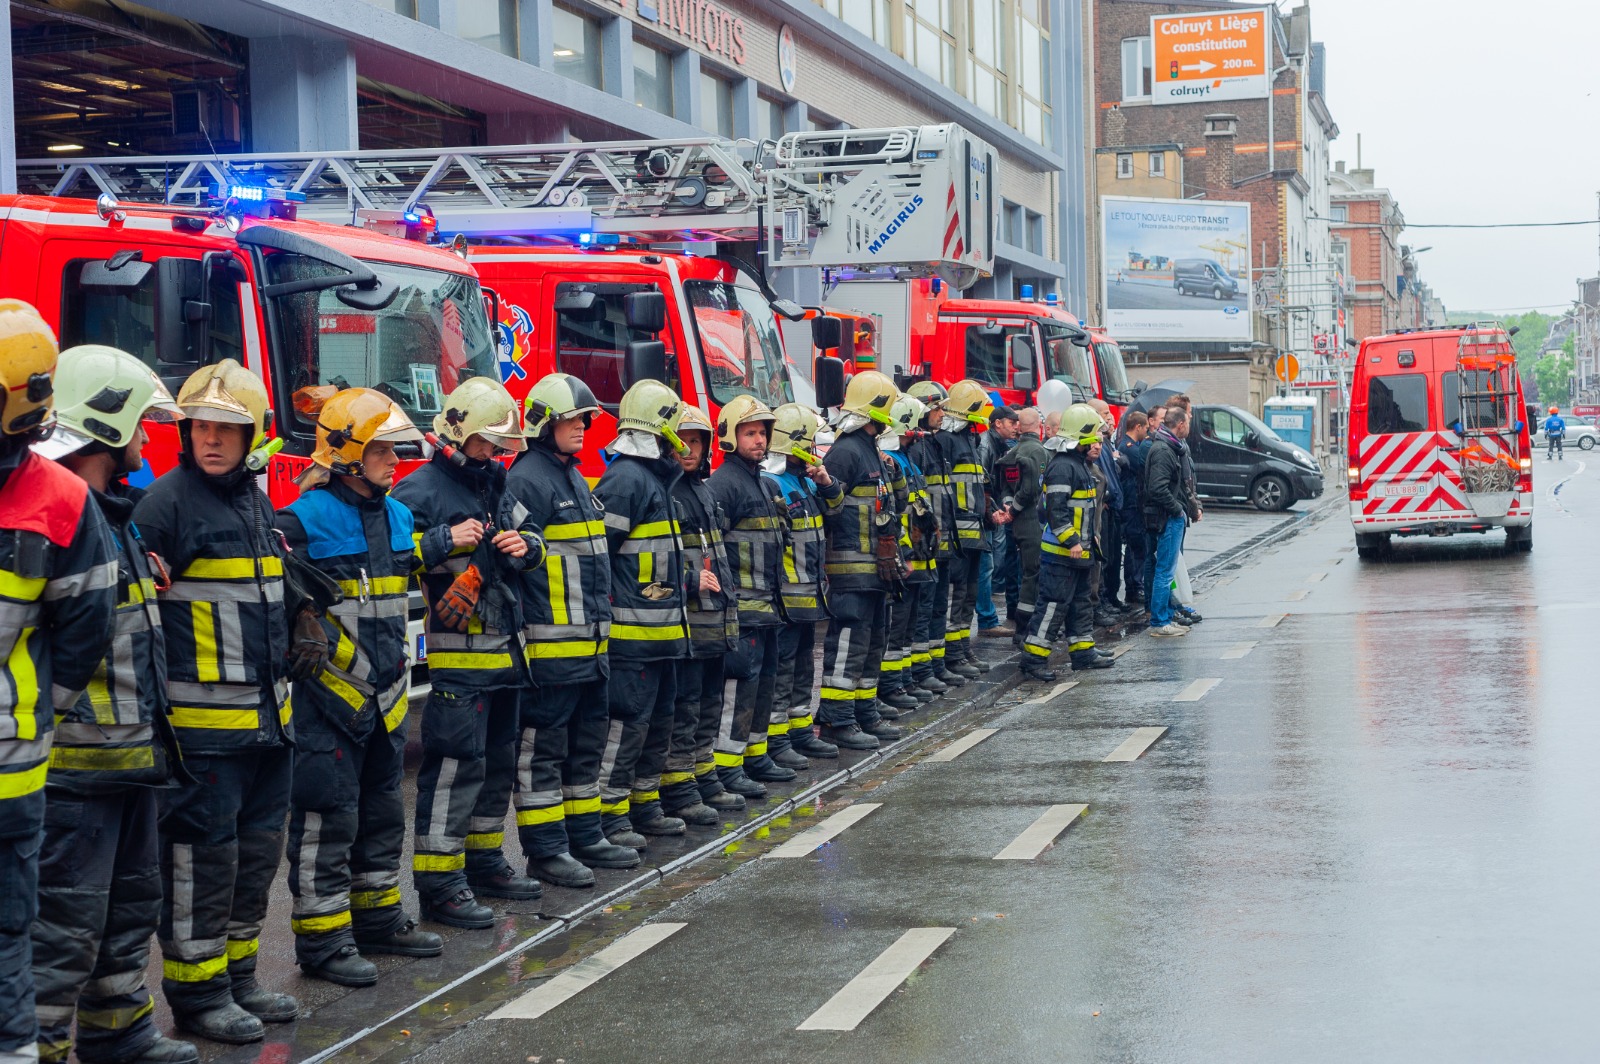 Caserne des pompiers de Liège : il faut agir maintenant pour la santé des pompiers et la sécurité des citoyens